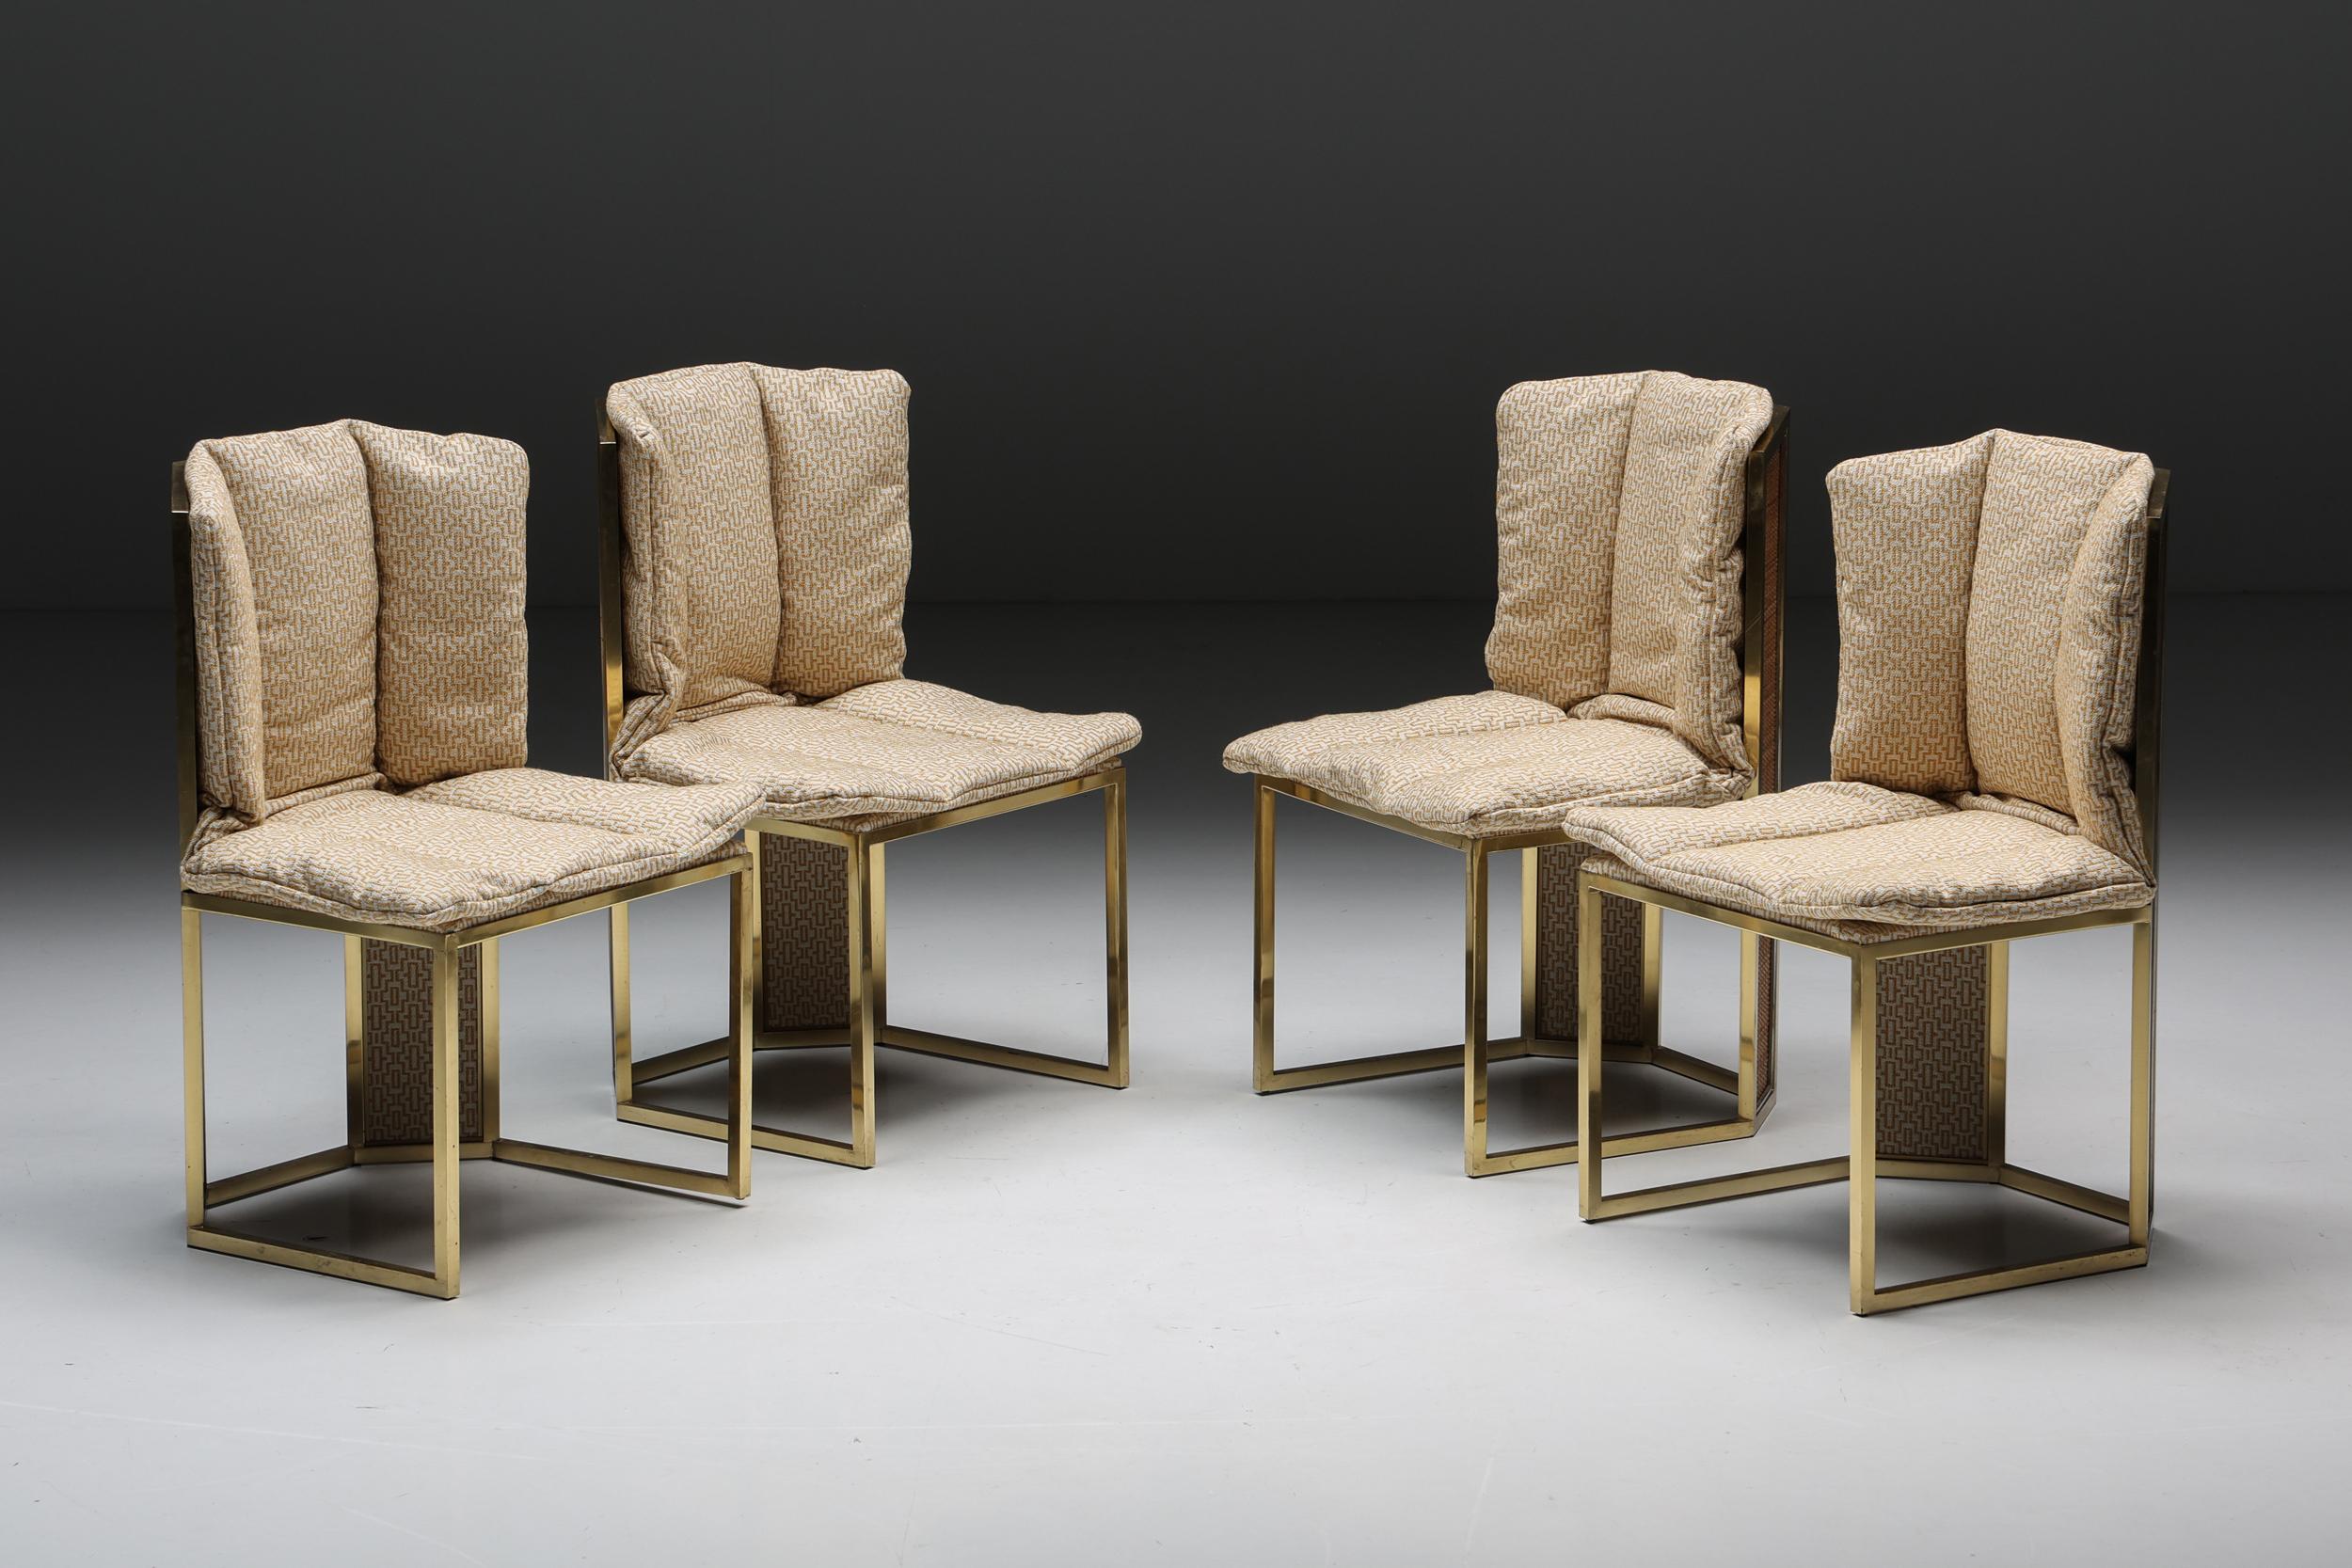 Chaises de salle à manger de Romeo Rega, véritable incarnation de l'artisanat italien des années 1970. Reflétant les matériaux de notre table à manger octogonale assortie, ces chaises présentent des accents vintage en laiton poli et chromé, mêlant